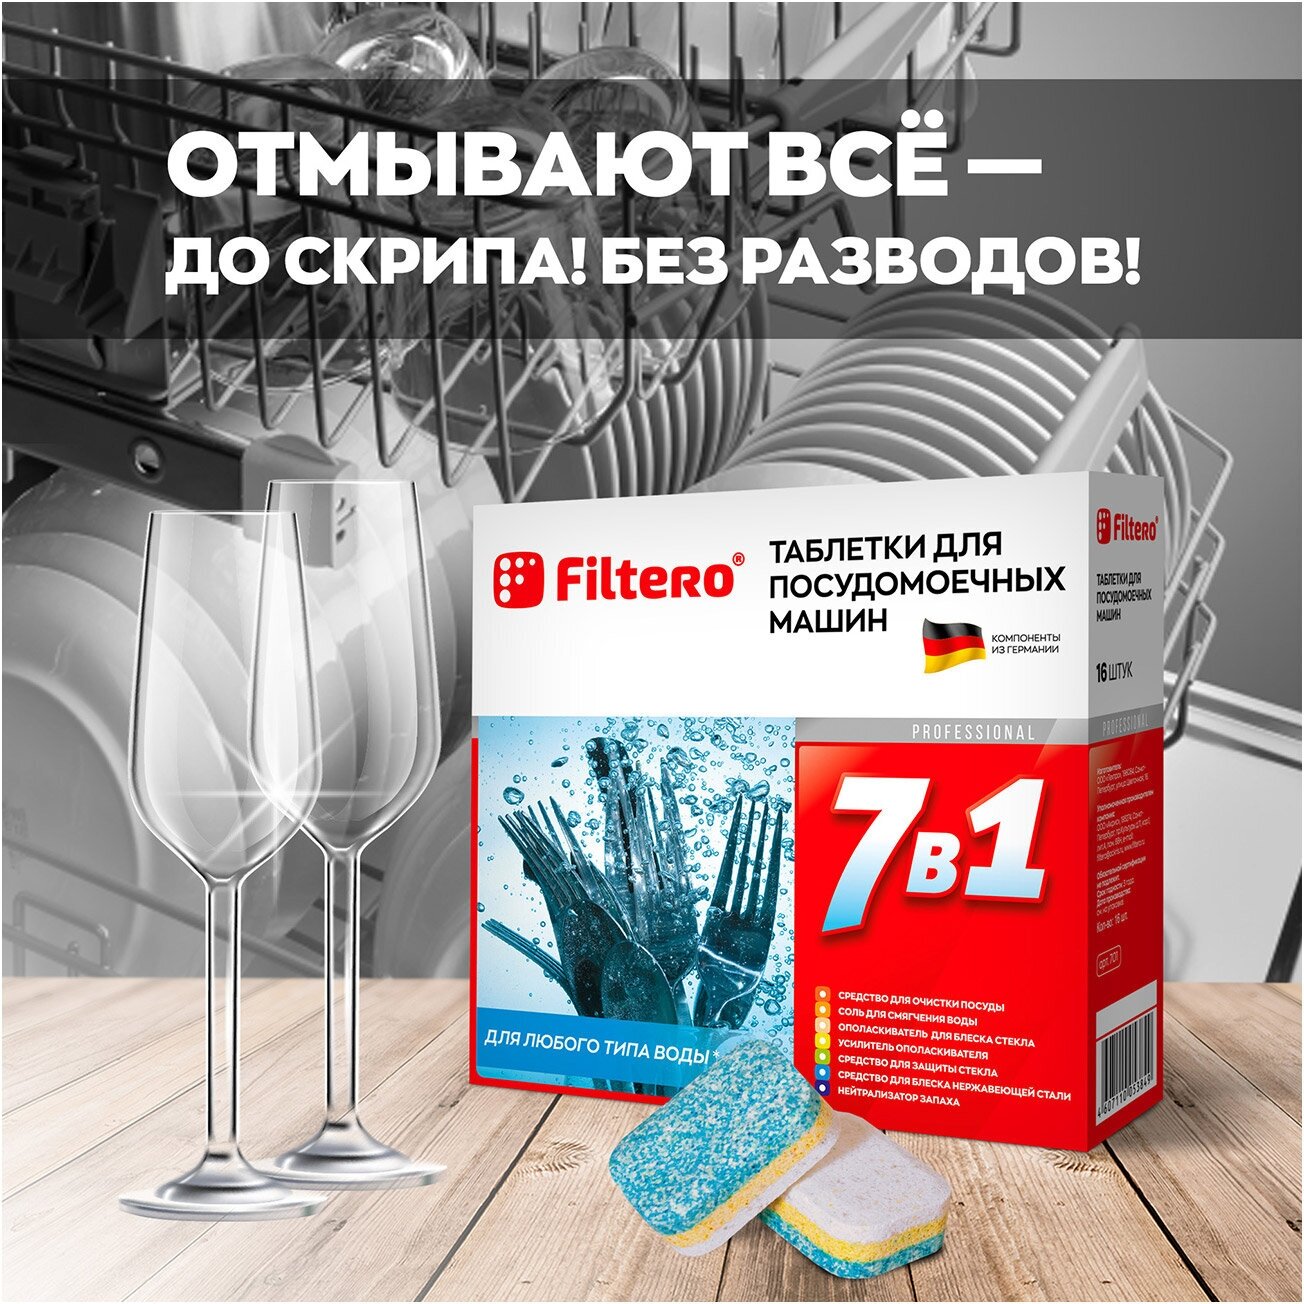 Таблетки для посудомоечной машины Filtero 7 в 1, 16 шт., коробка - фотография № 13